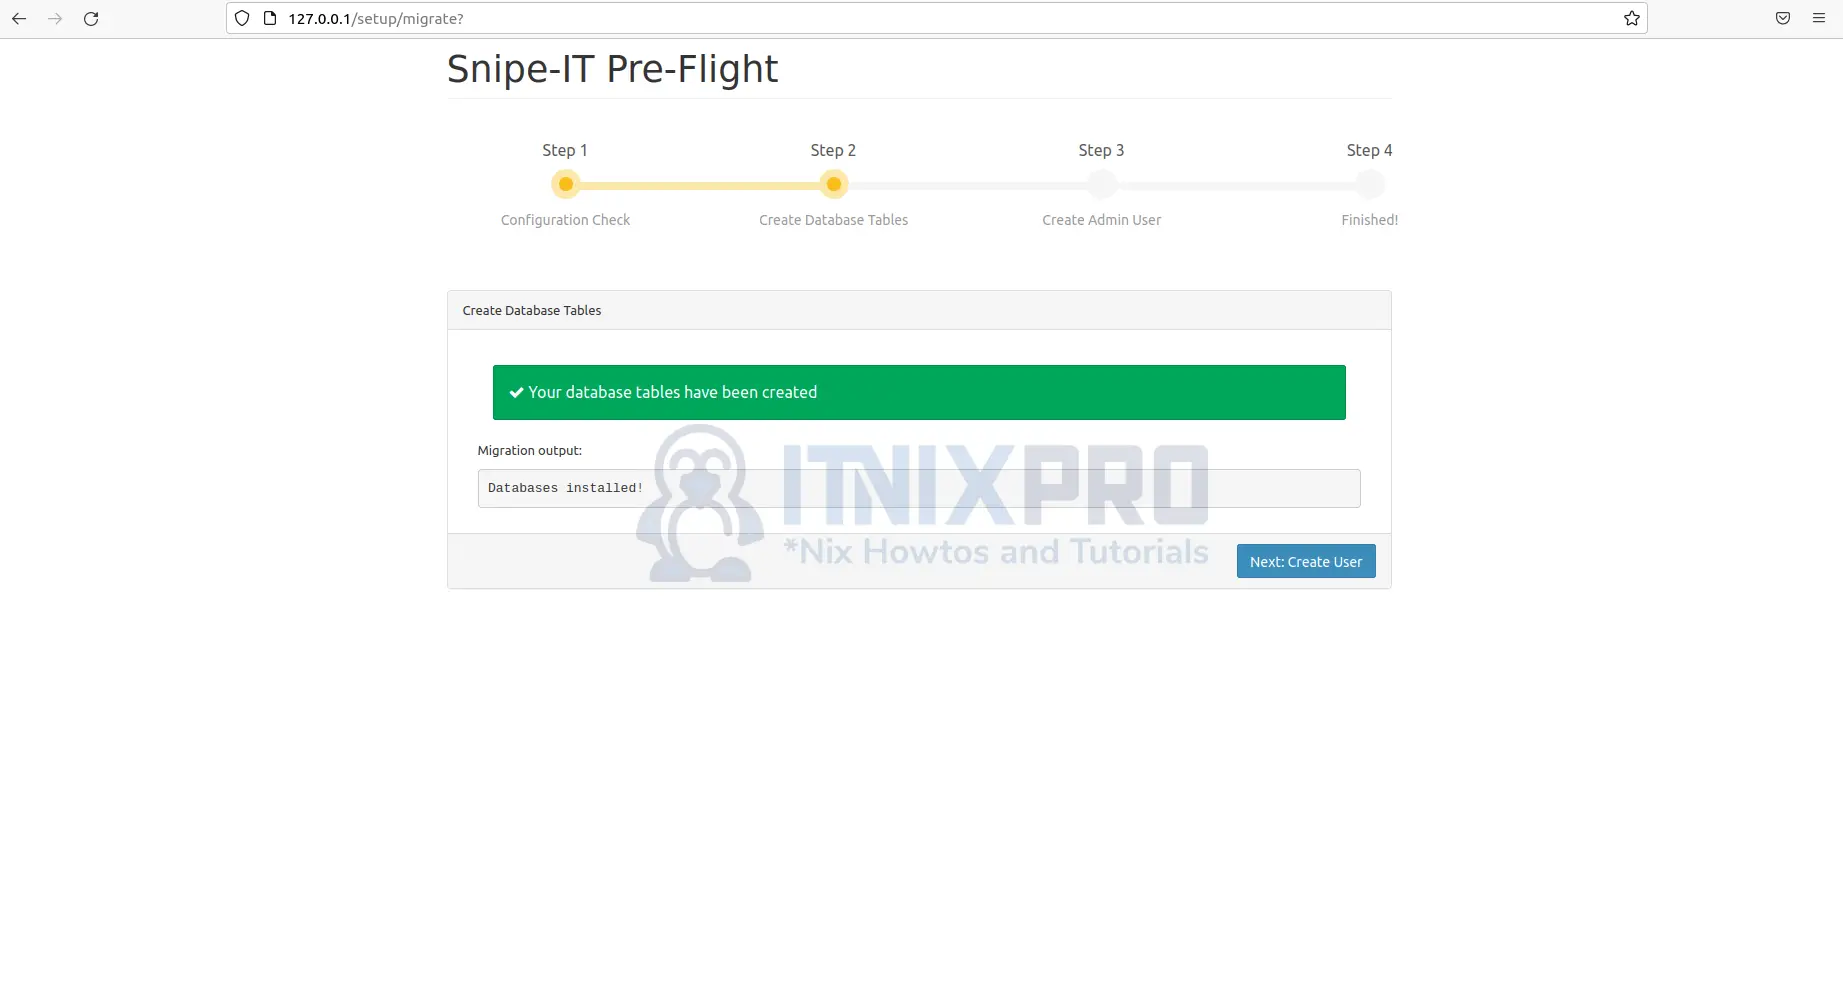 Install Snipe-IT on Ubuntu 22.04